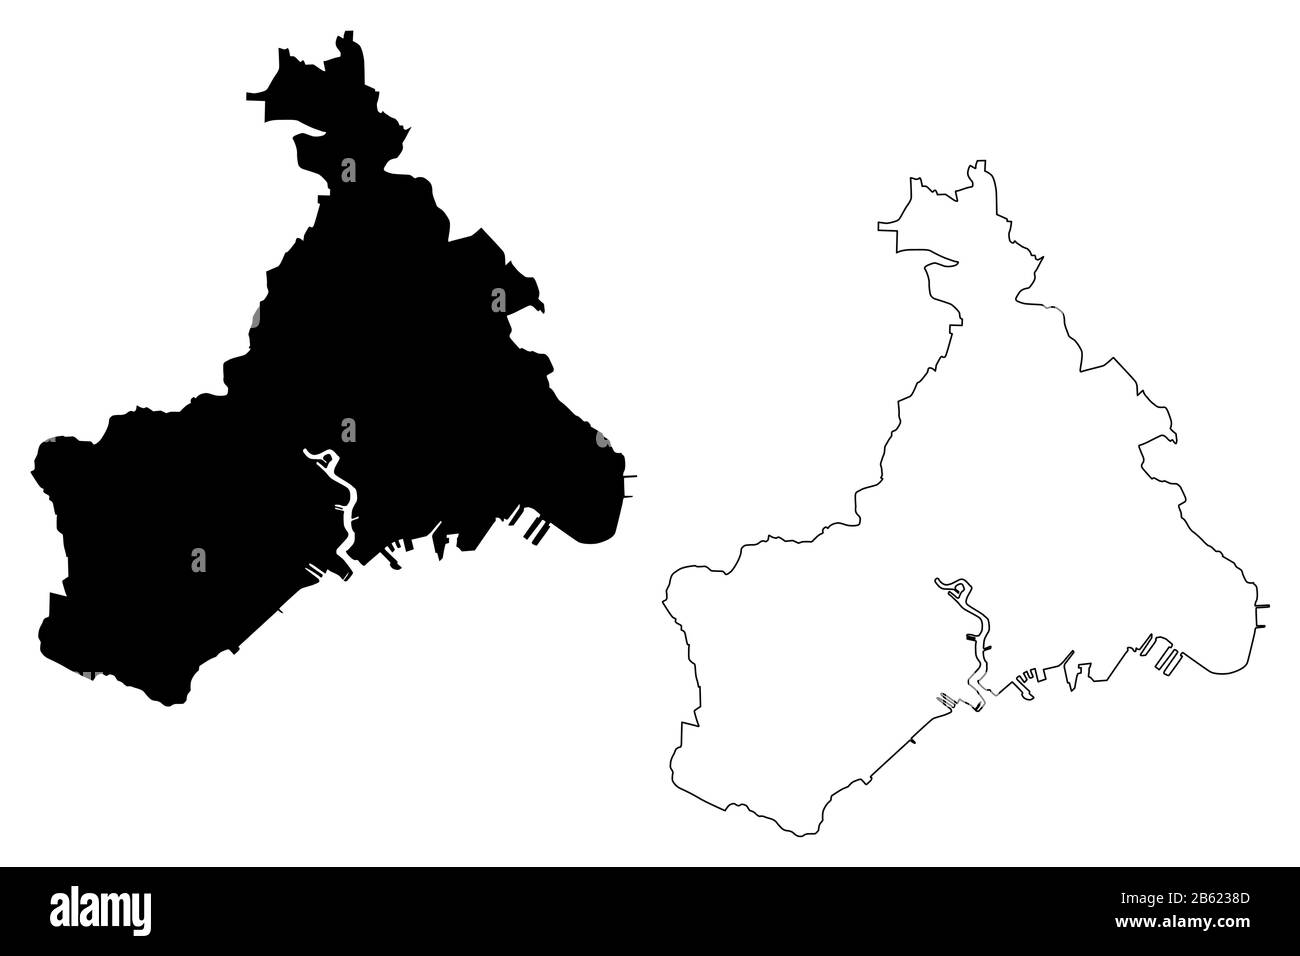 Brest City (République française, France) illustration vectorielle de carte, esquisse de galets carte de la ville de Brest Illustration de Vecteur